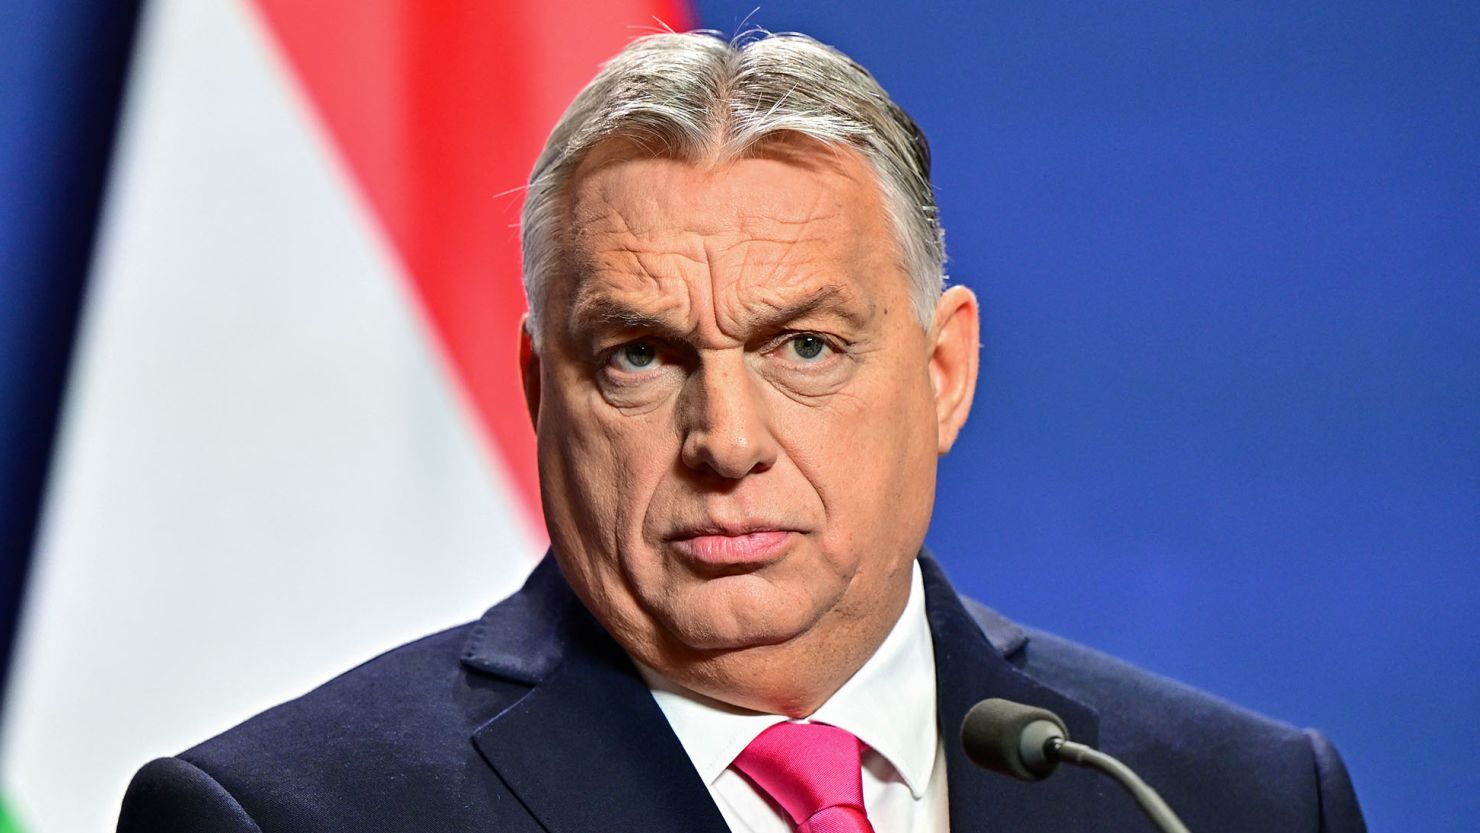 युद्ध शुरू होने के बाद पहली बार यूक्रेन पहुंचे हंगरी के प्रधानमंत्री ओरबन